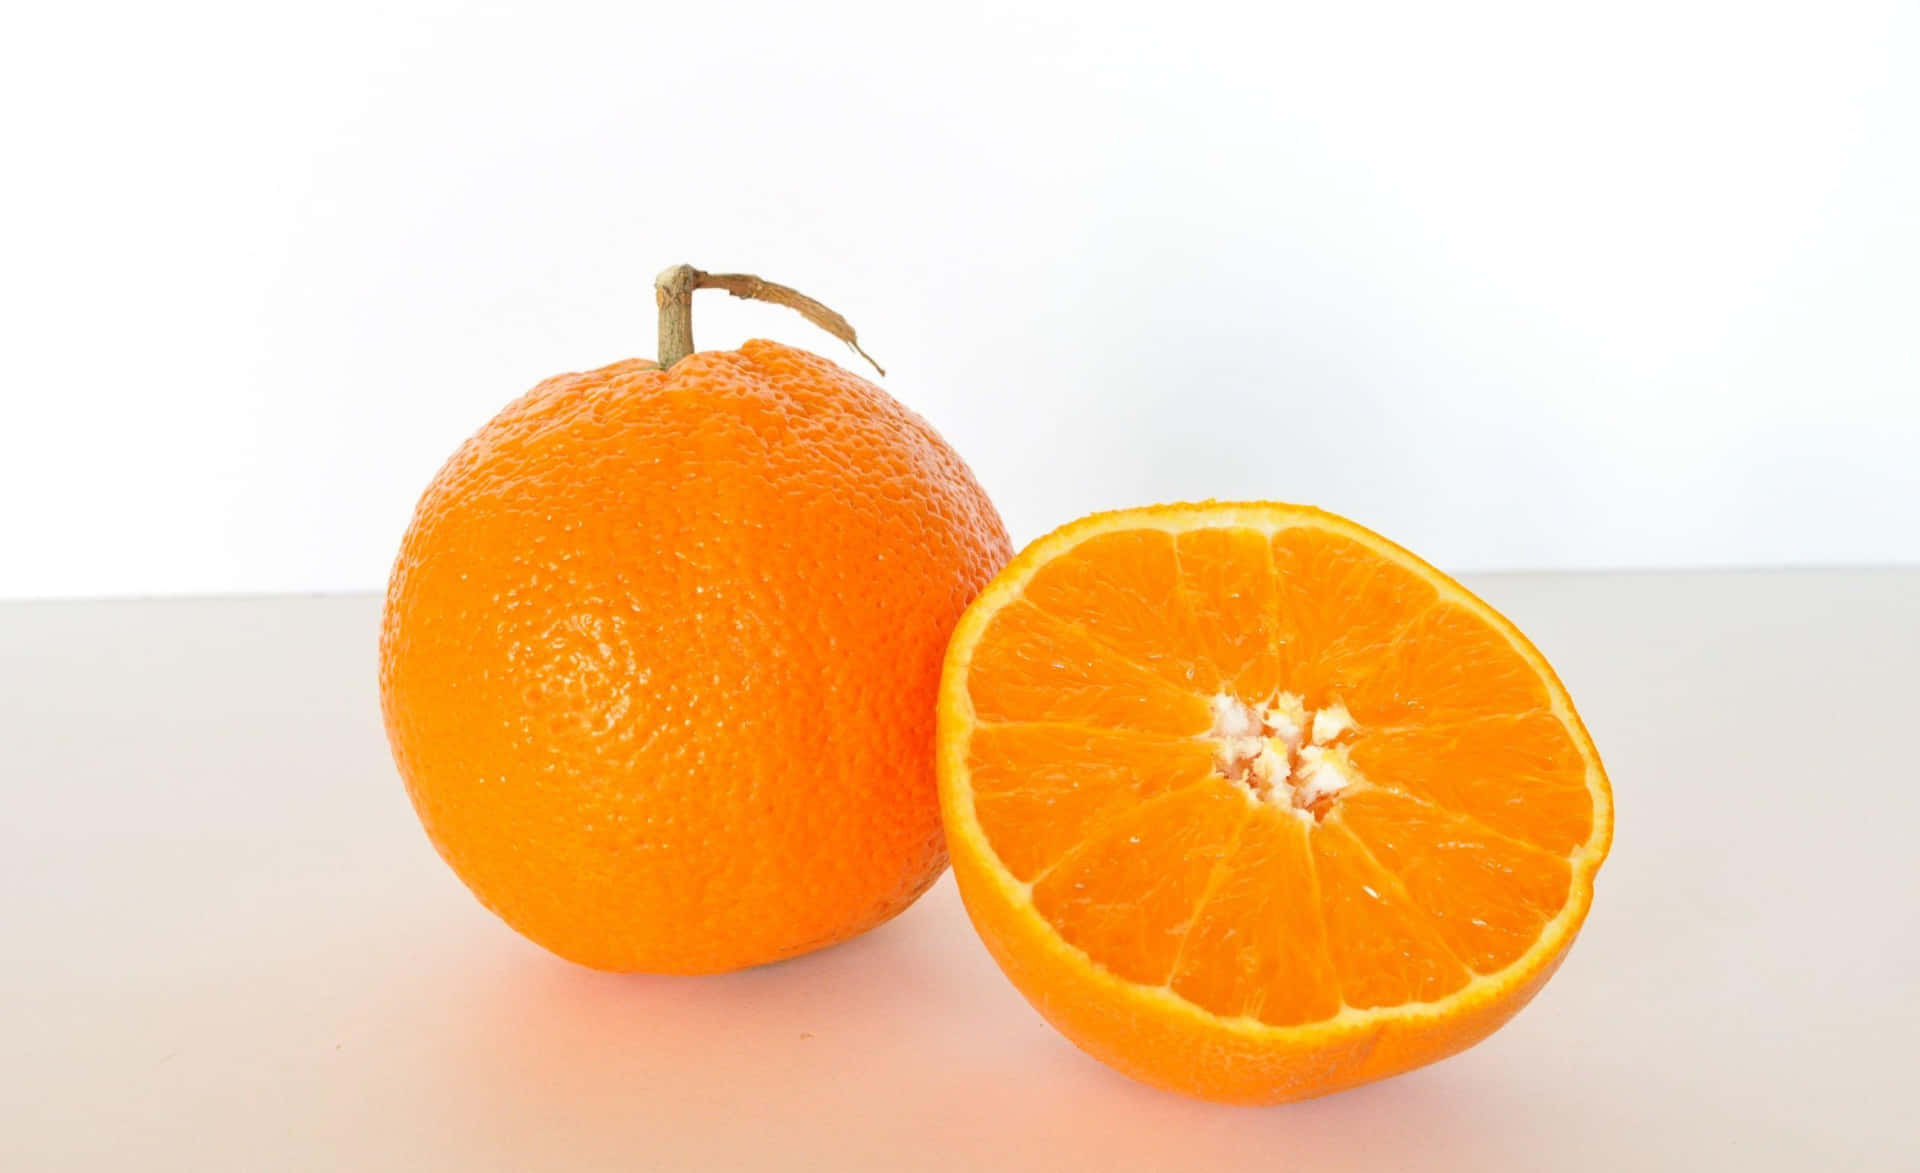 Caption: Fresh and Juicy Orange Fruit